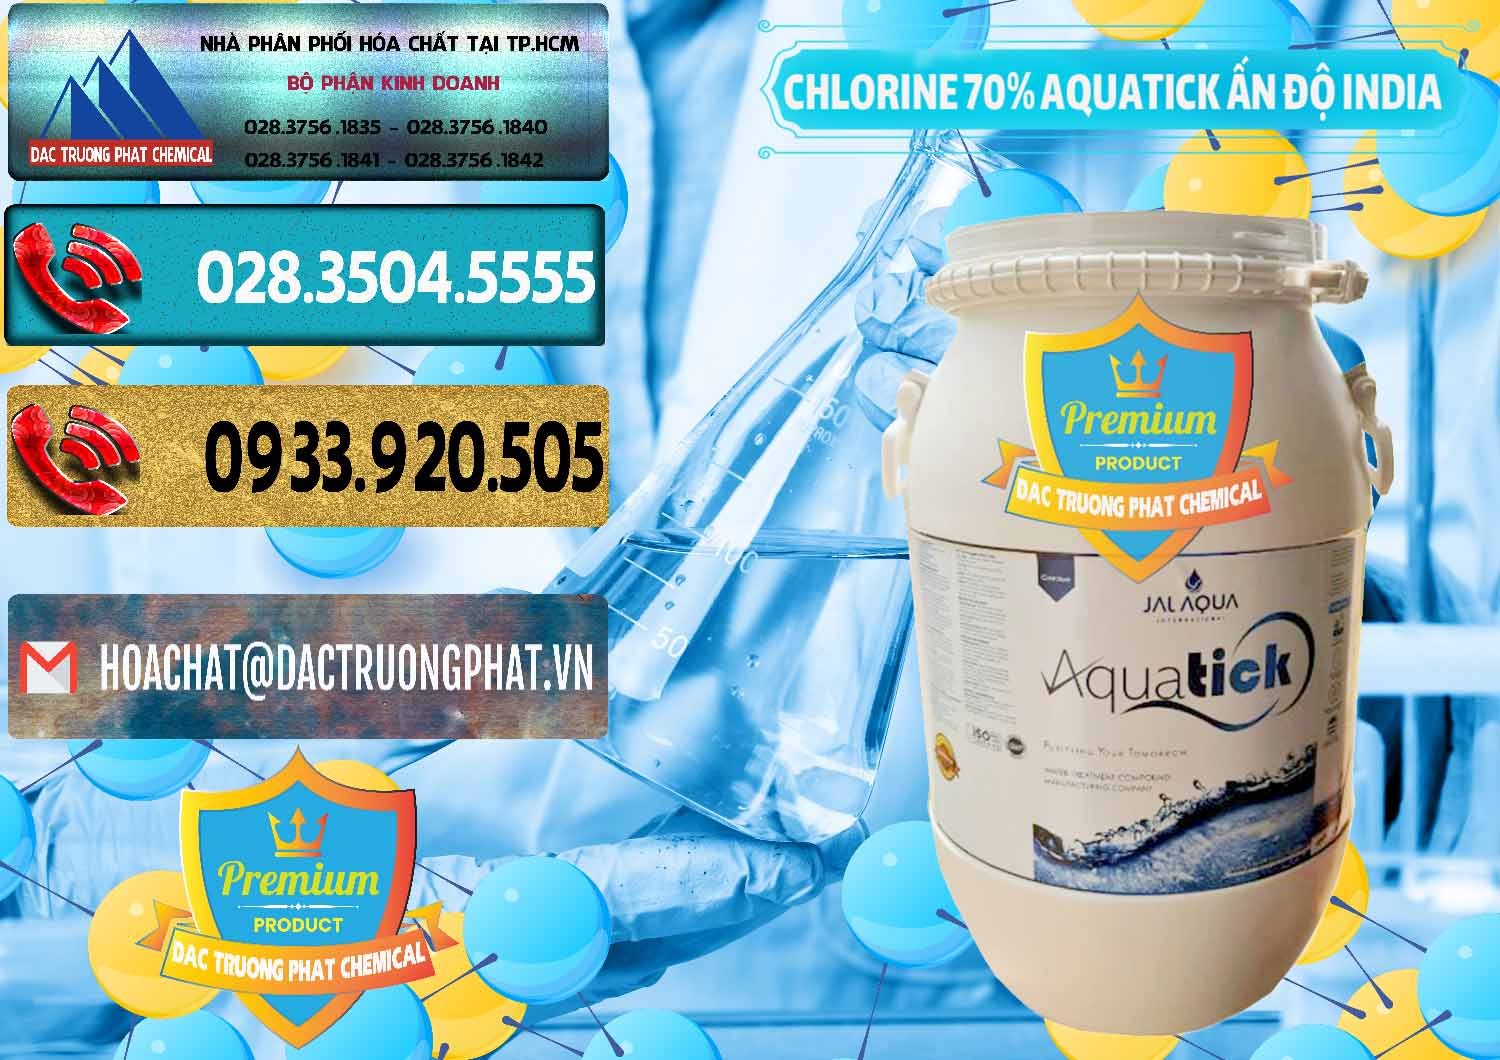 Nơi chuyên cung cấp ( bán ) Chlorine – Clorin 70% Aquatick Jal Aqua Ấn Độ India - 0215 - Nhà phân phối _ bán hóa chất tại TP.HCM - hoachatdetnhuom.com